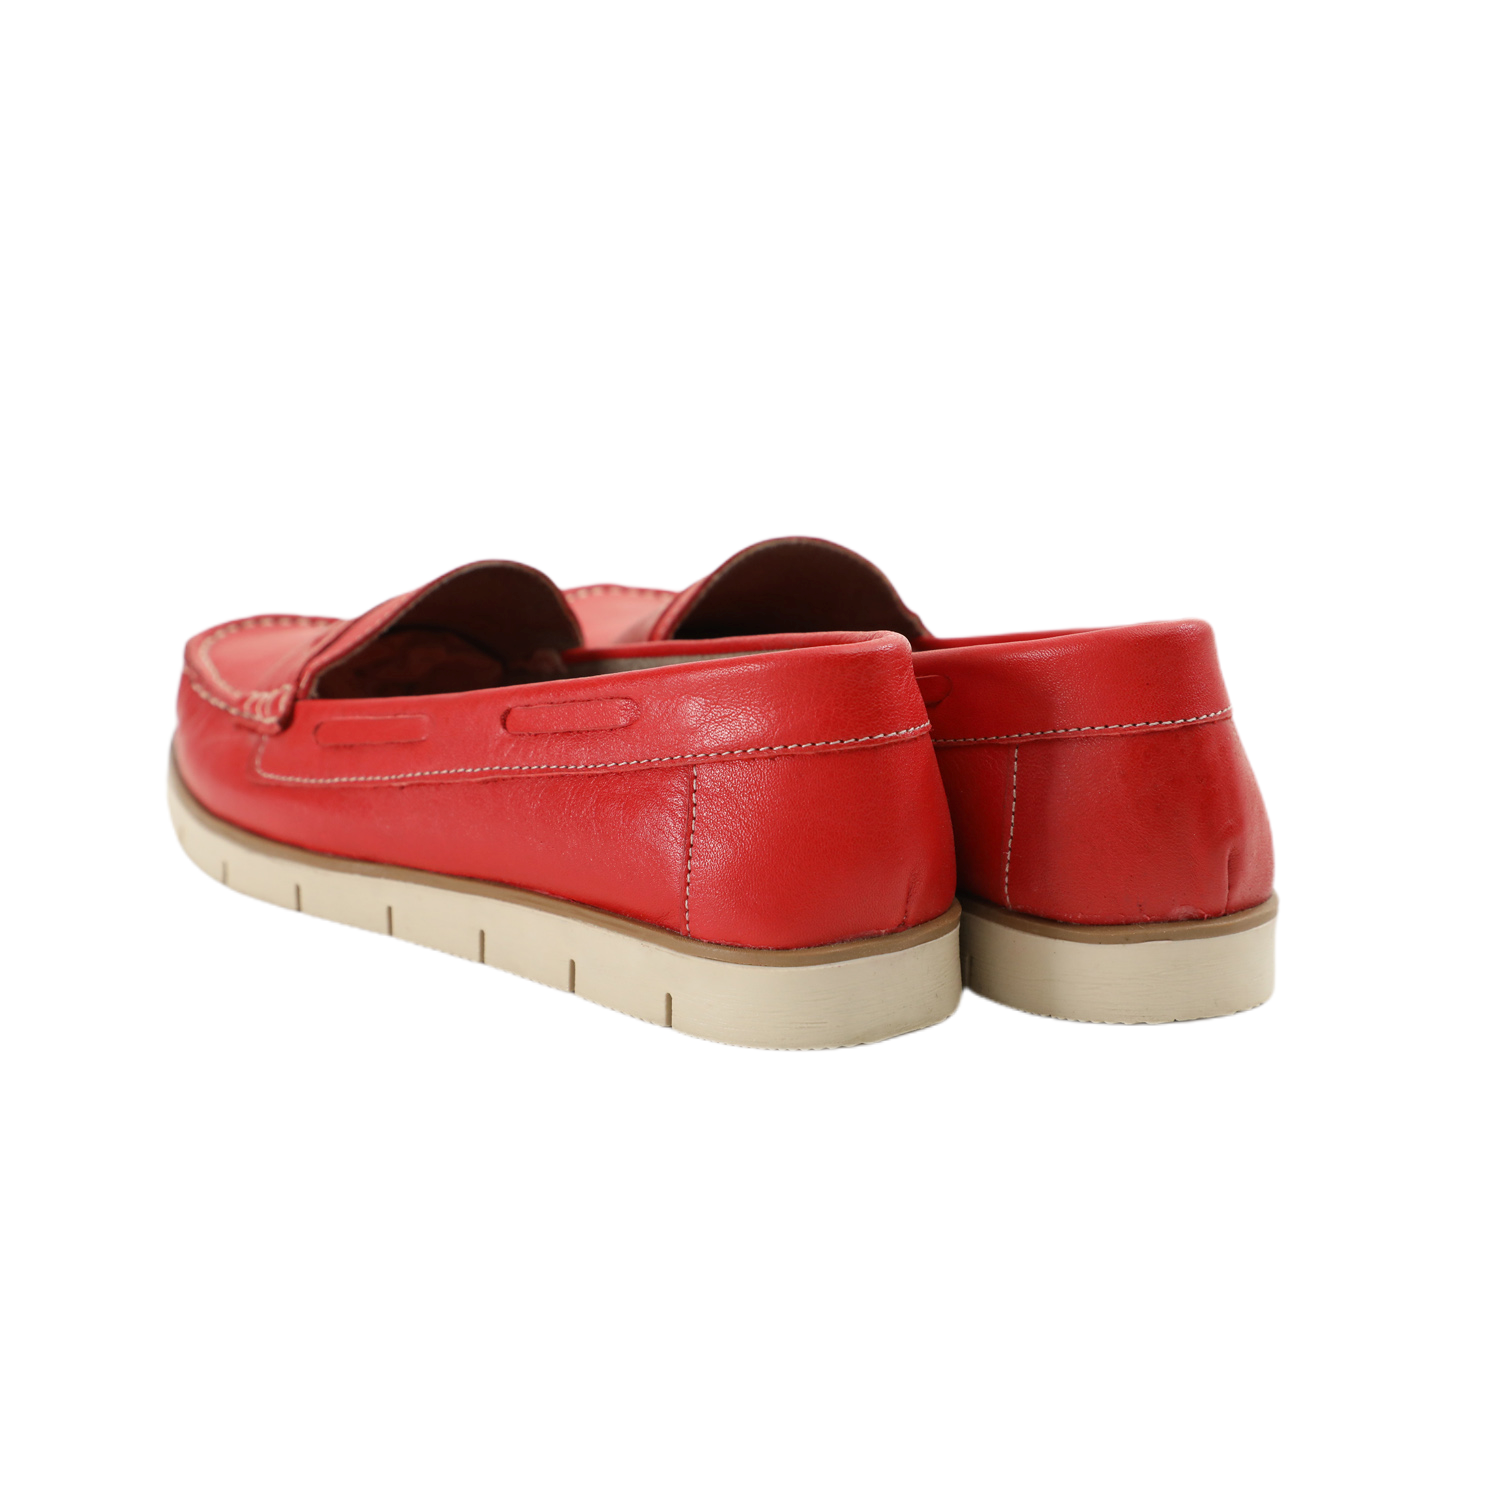 Matraş Kadın Loafer Ayakkabı  Kırmızı 9FF-1104